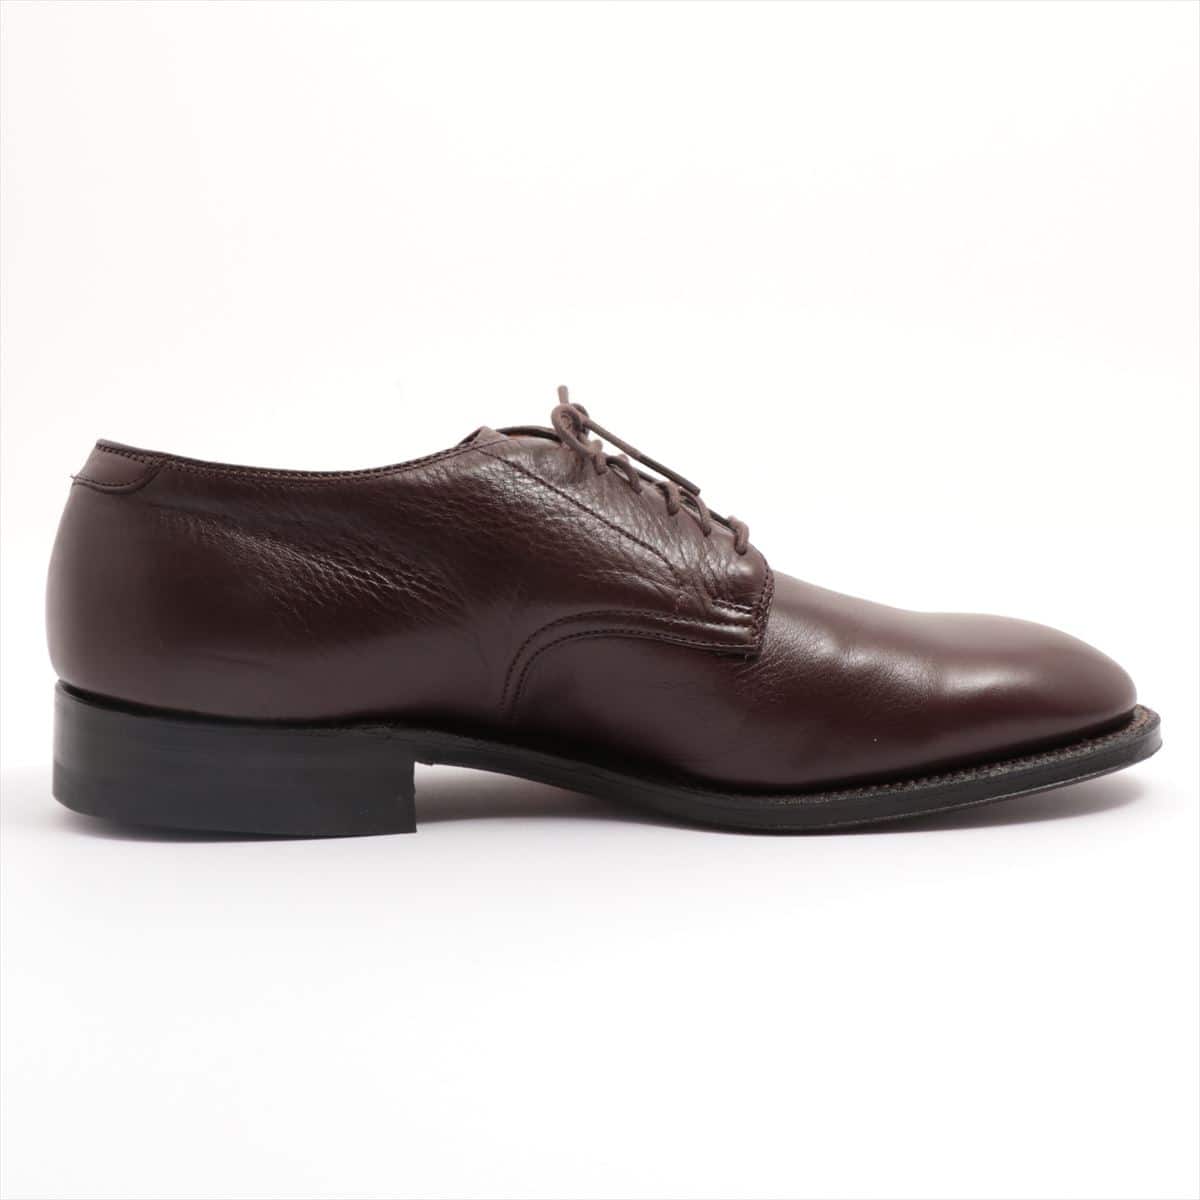 Alden Leather Shoes 7 1/2 Men's Brown plain toe Arrows bespoke